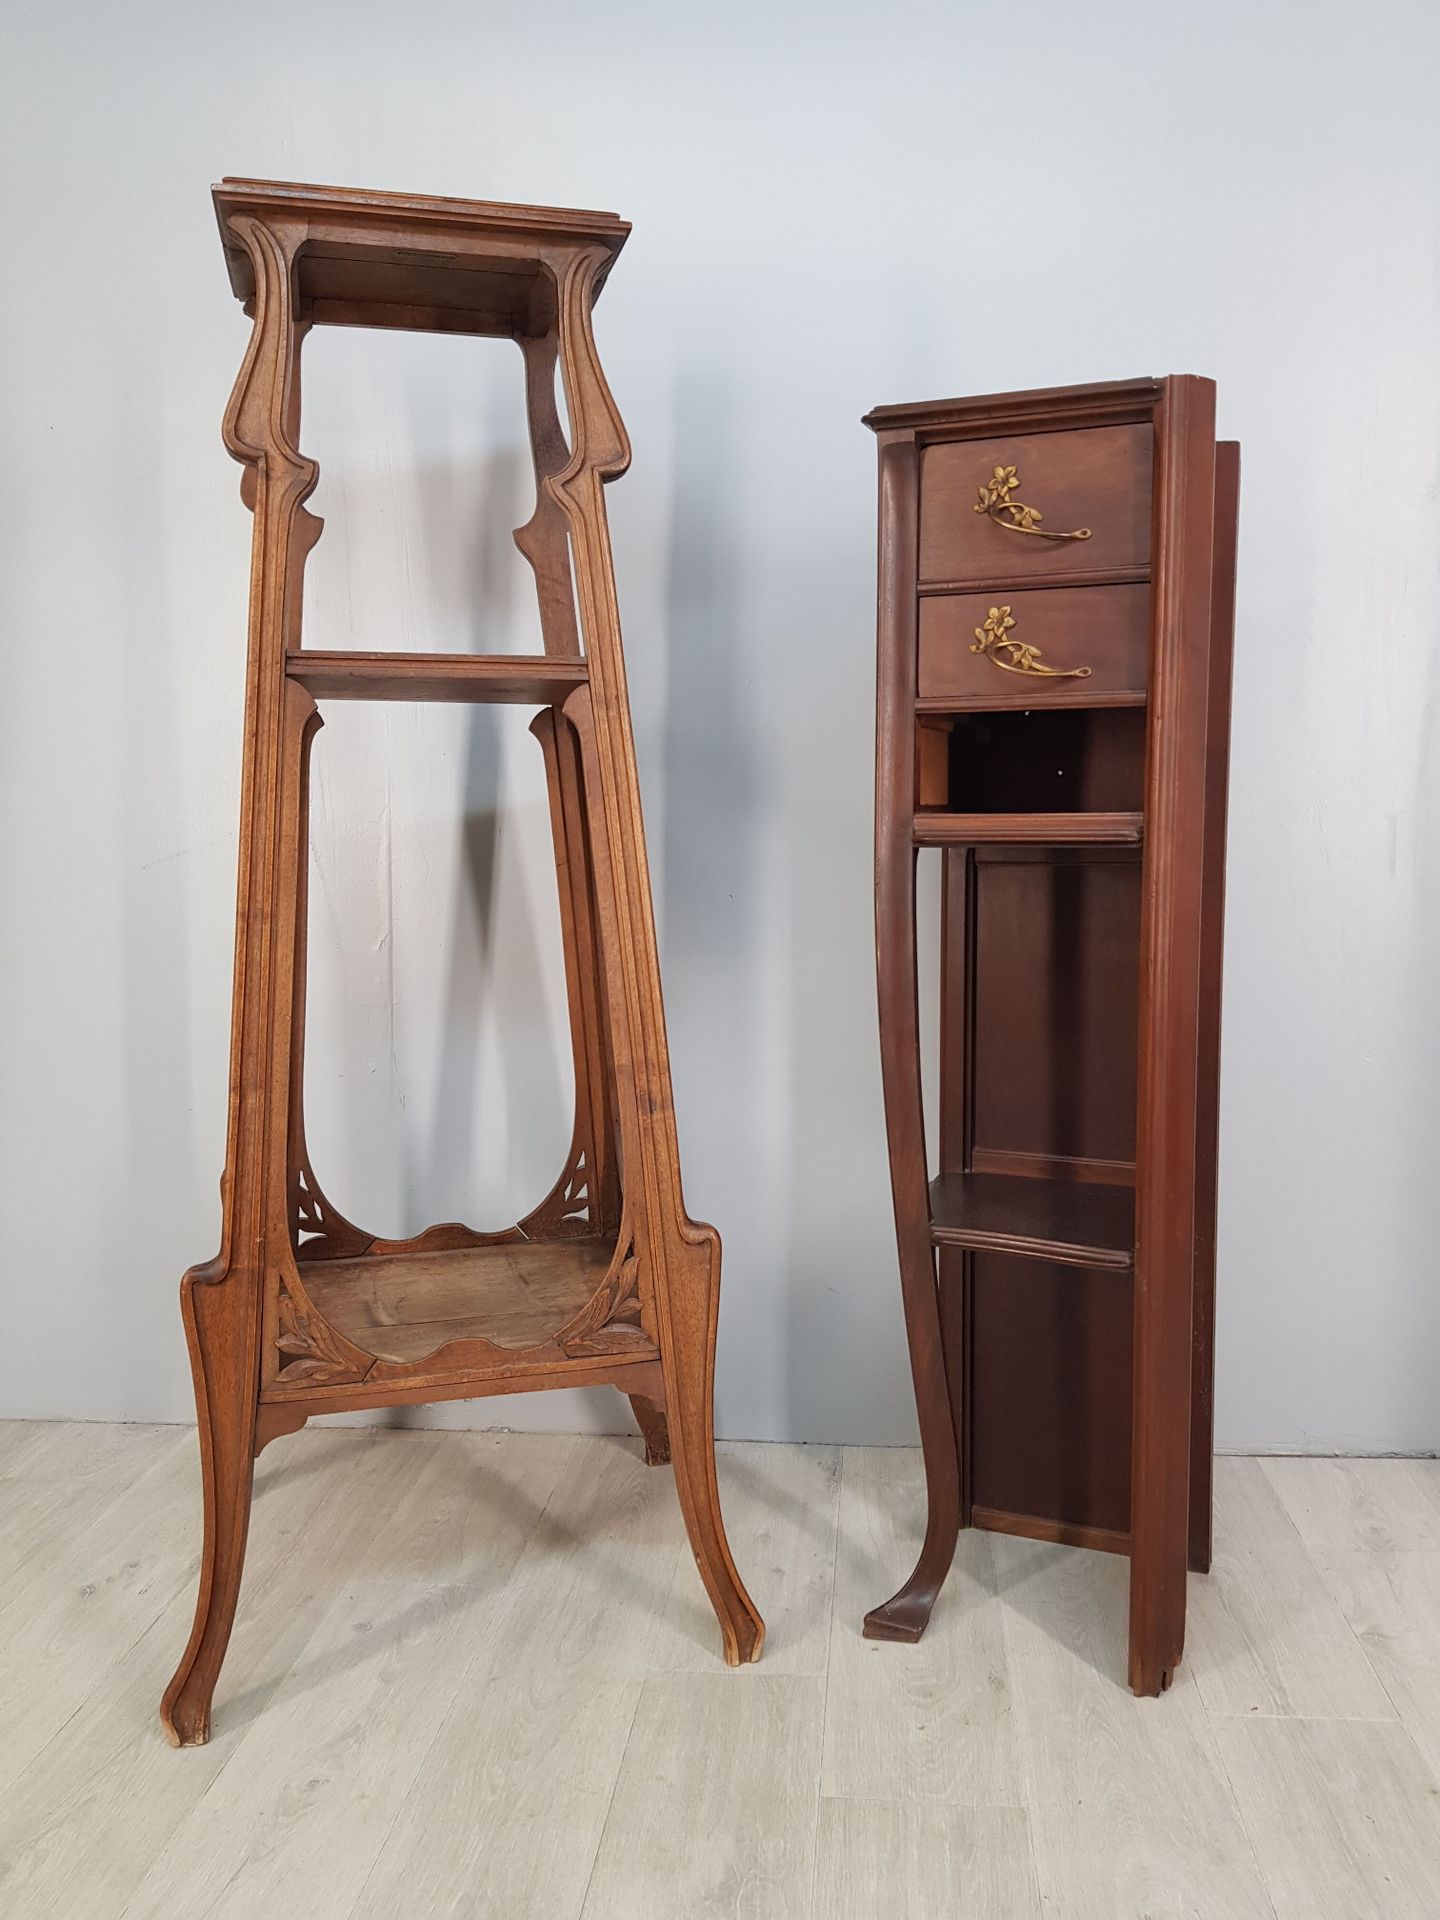 Null Conjunto de muebles Art Nouveau que incluye :
- sellette alta de madera mol&hellip;